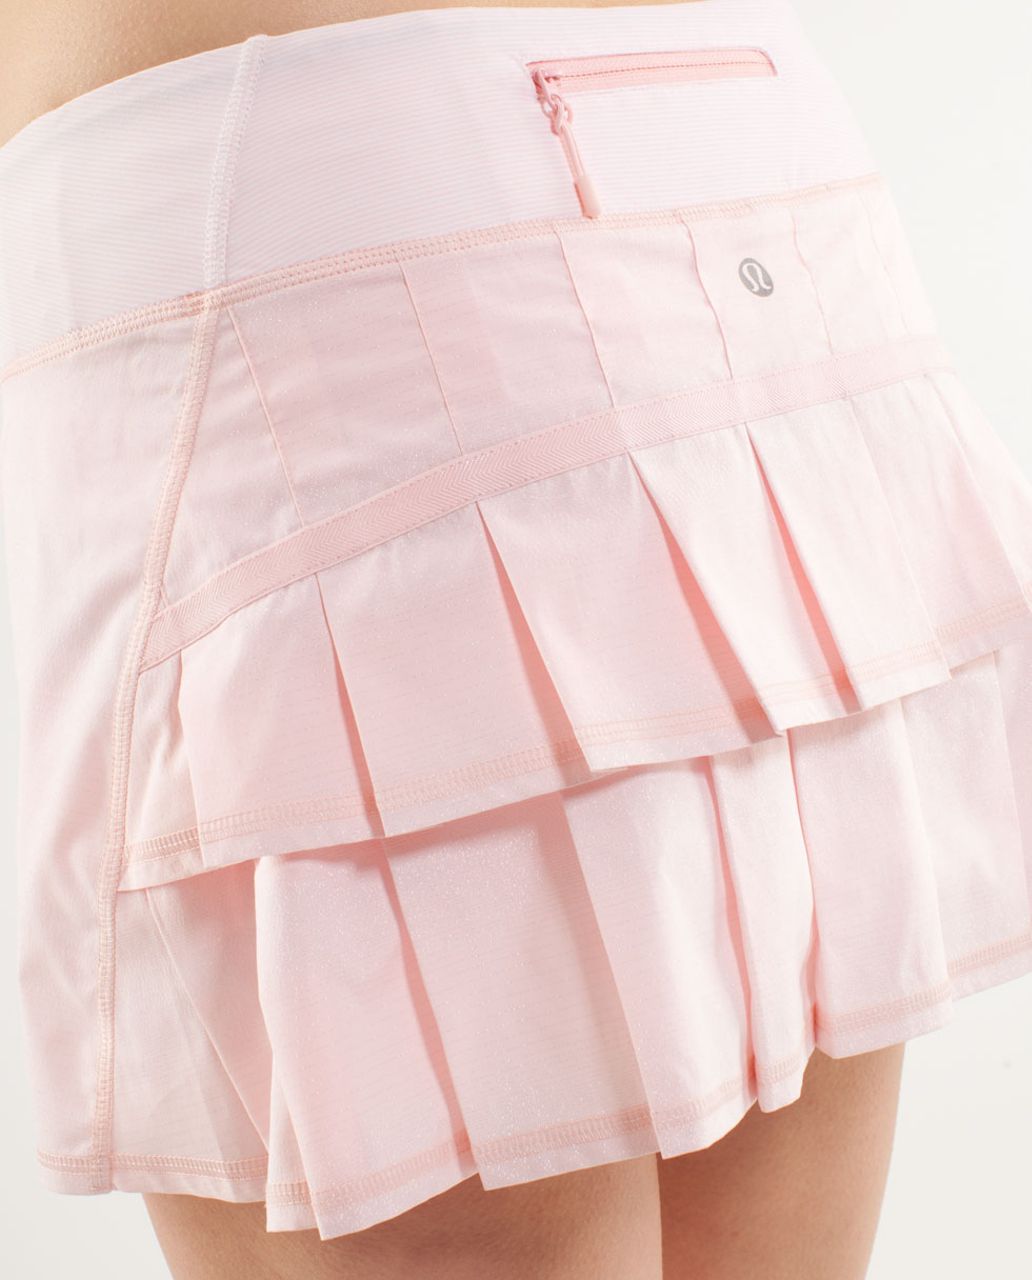 Lululemon Pace Setter Skort Blushed Pink Tennis Skirt Size 6